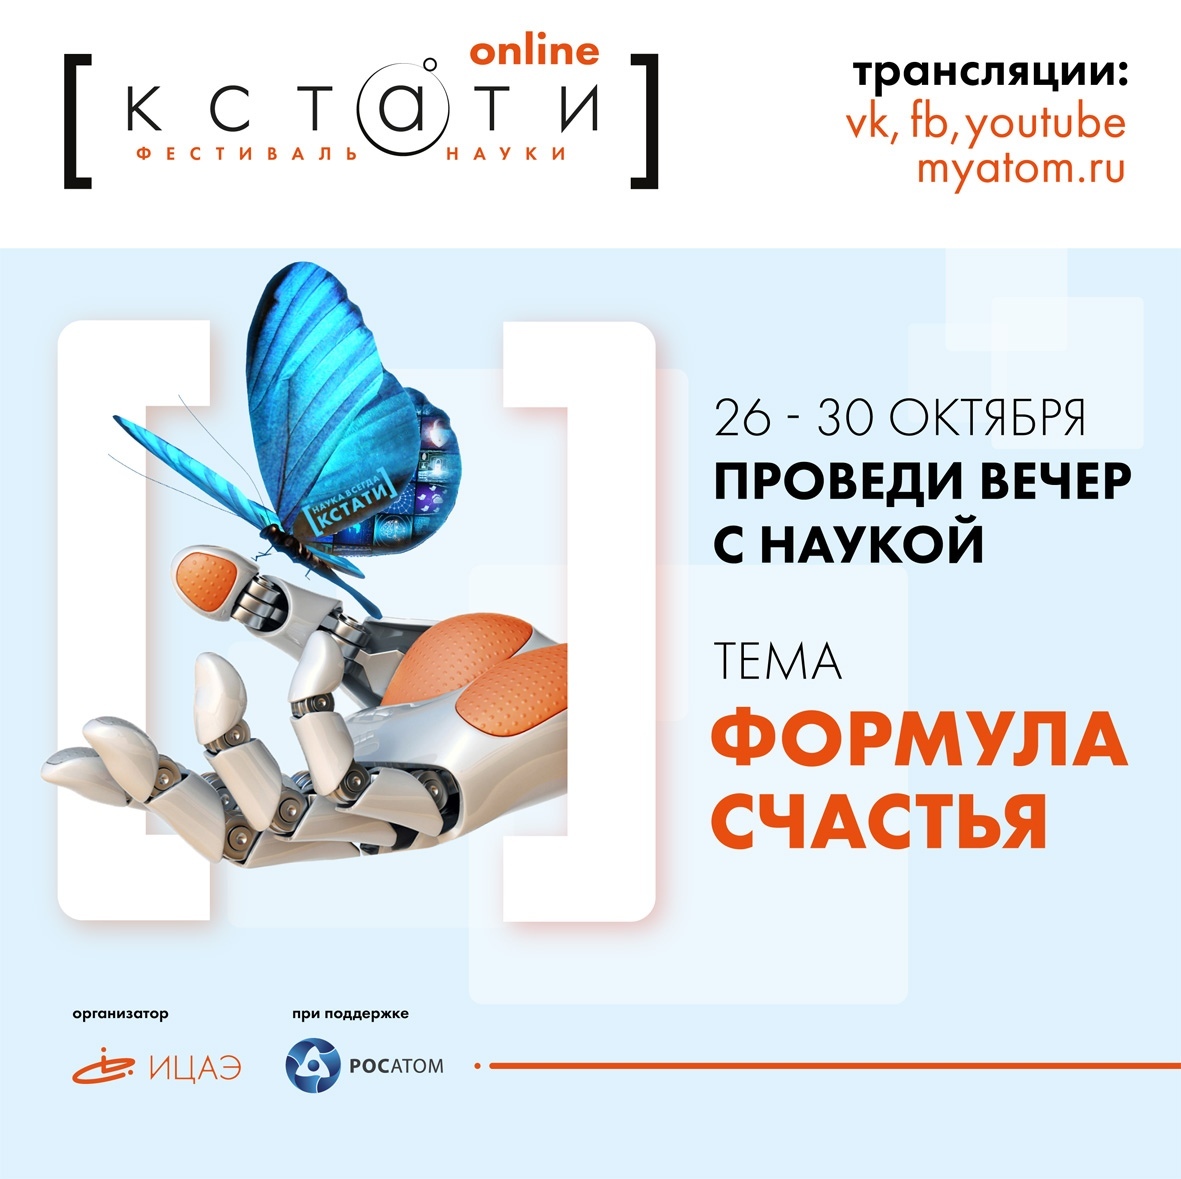 Афиша Ижевска — Онлайн-фестиваль науки «КСТАТИ»